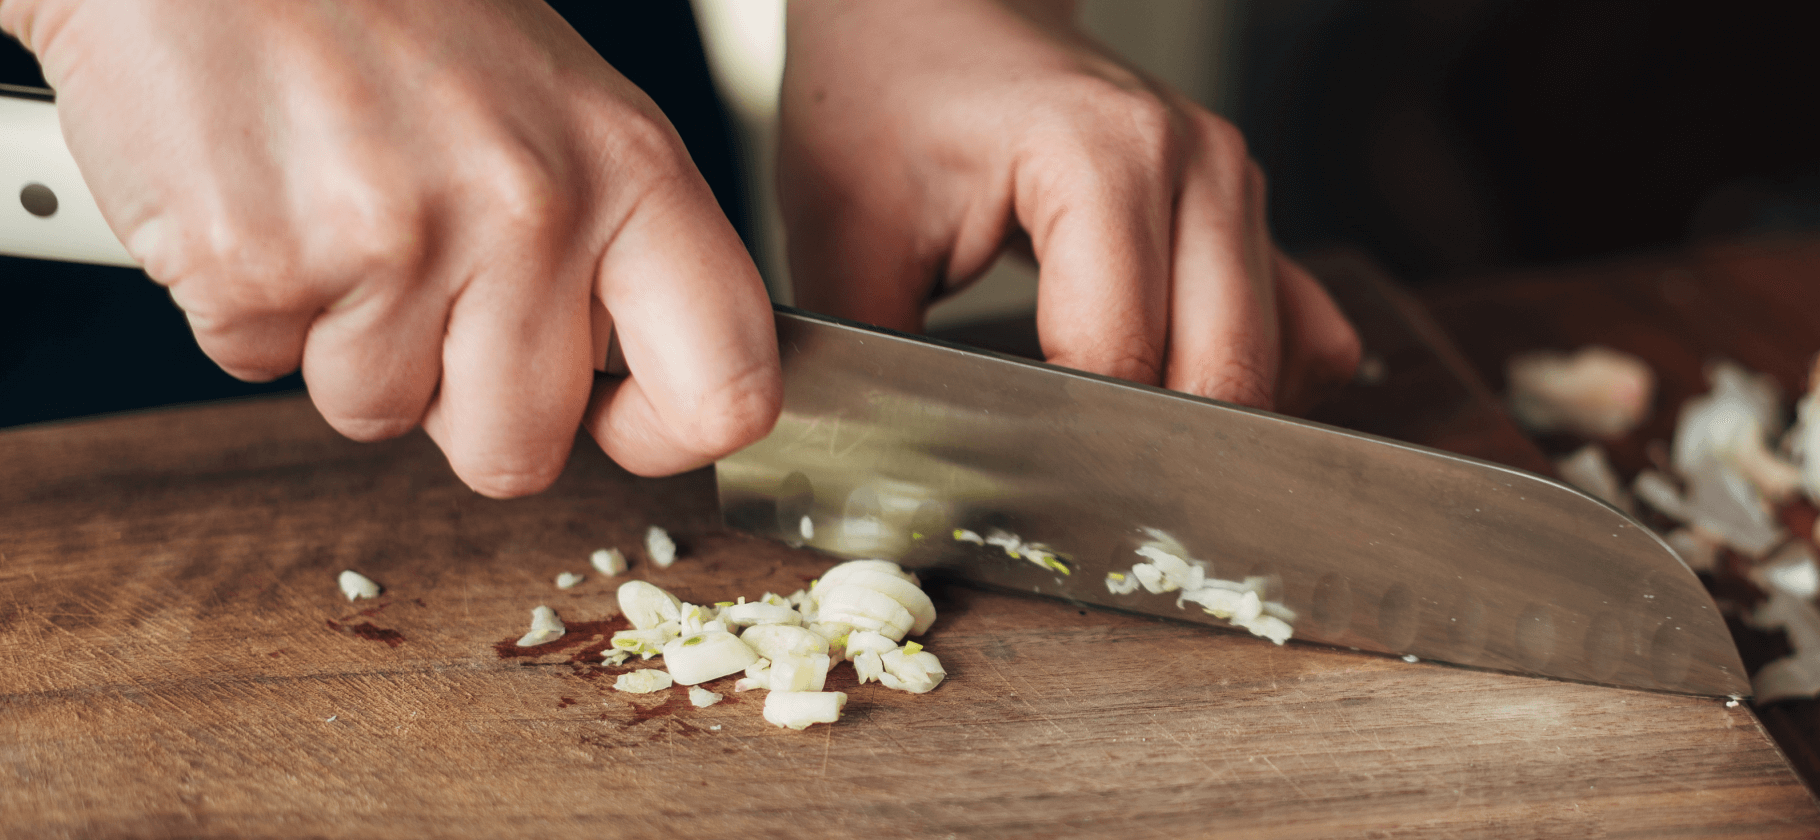 Давить или резать: как добавлять чеснок в блюда для оптимального вкуса